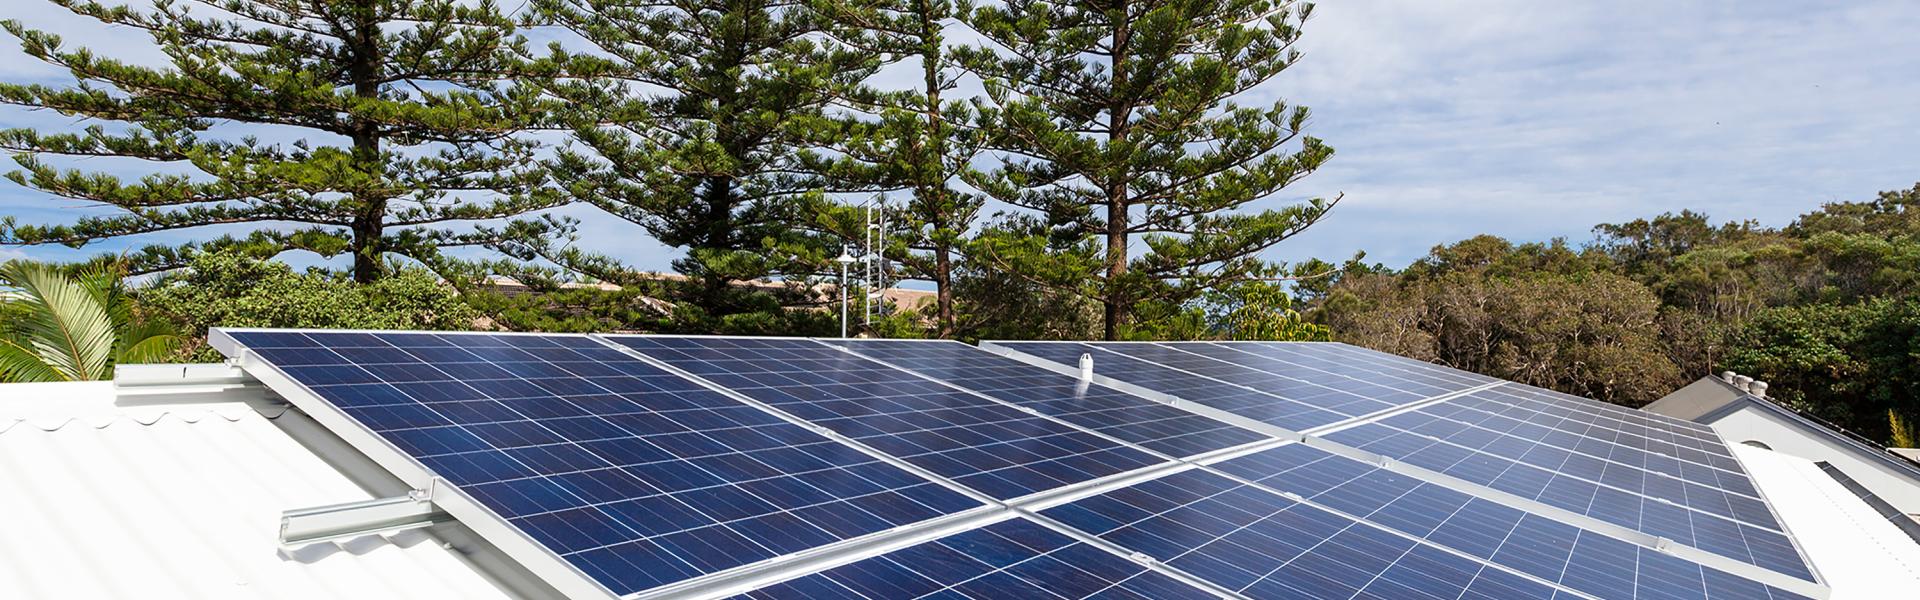 Toiture solaire - Panneaux photovoltaïques - Solutions d'énergies renouvelables pour les agriculteurs, industriels et collectivités